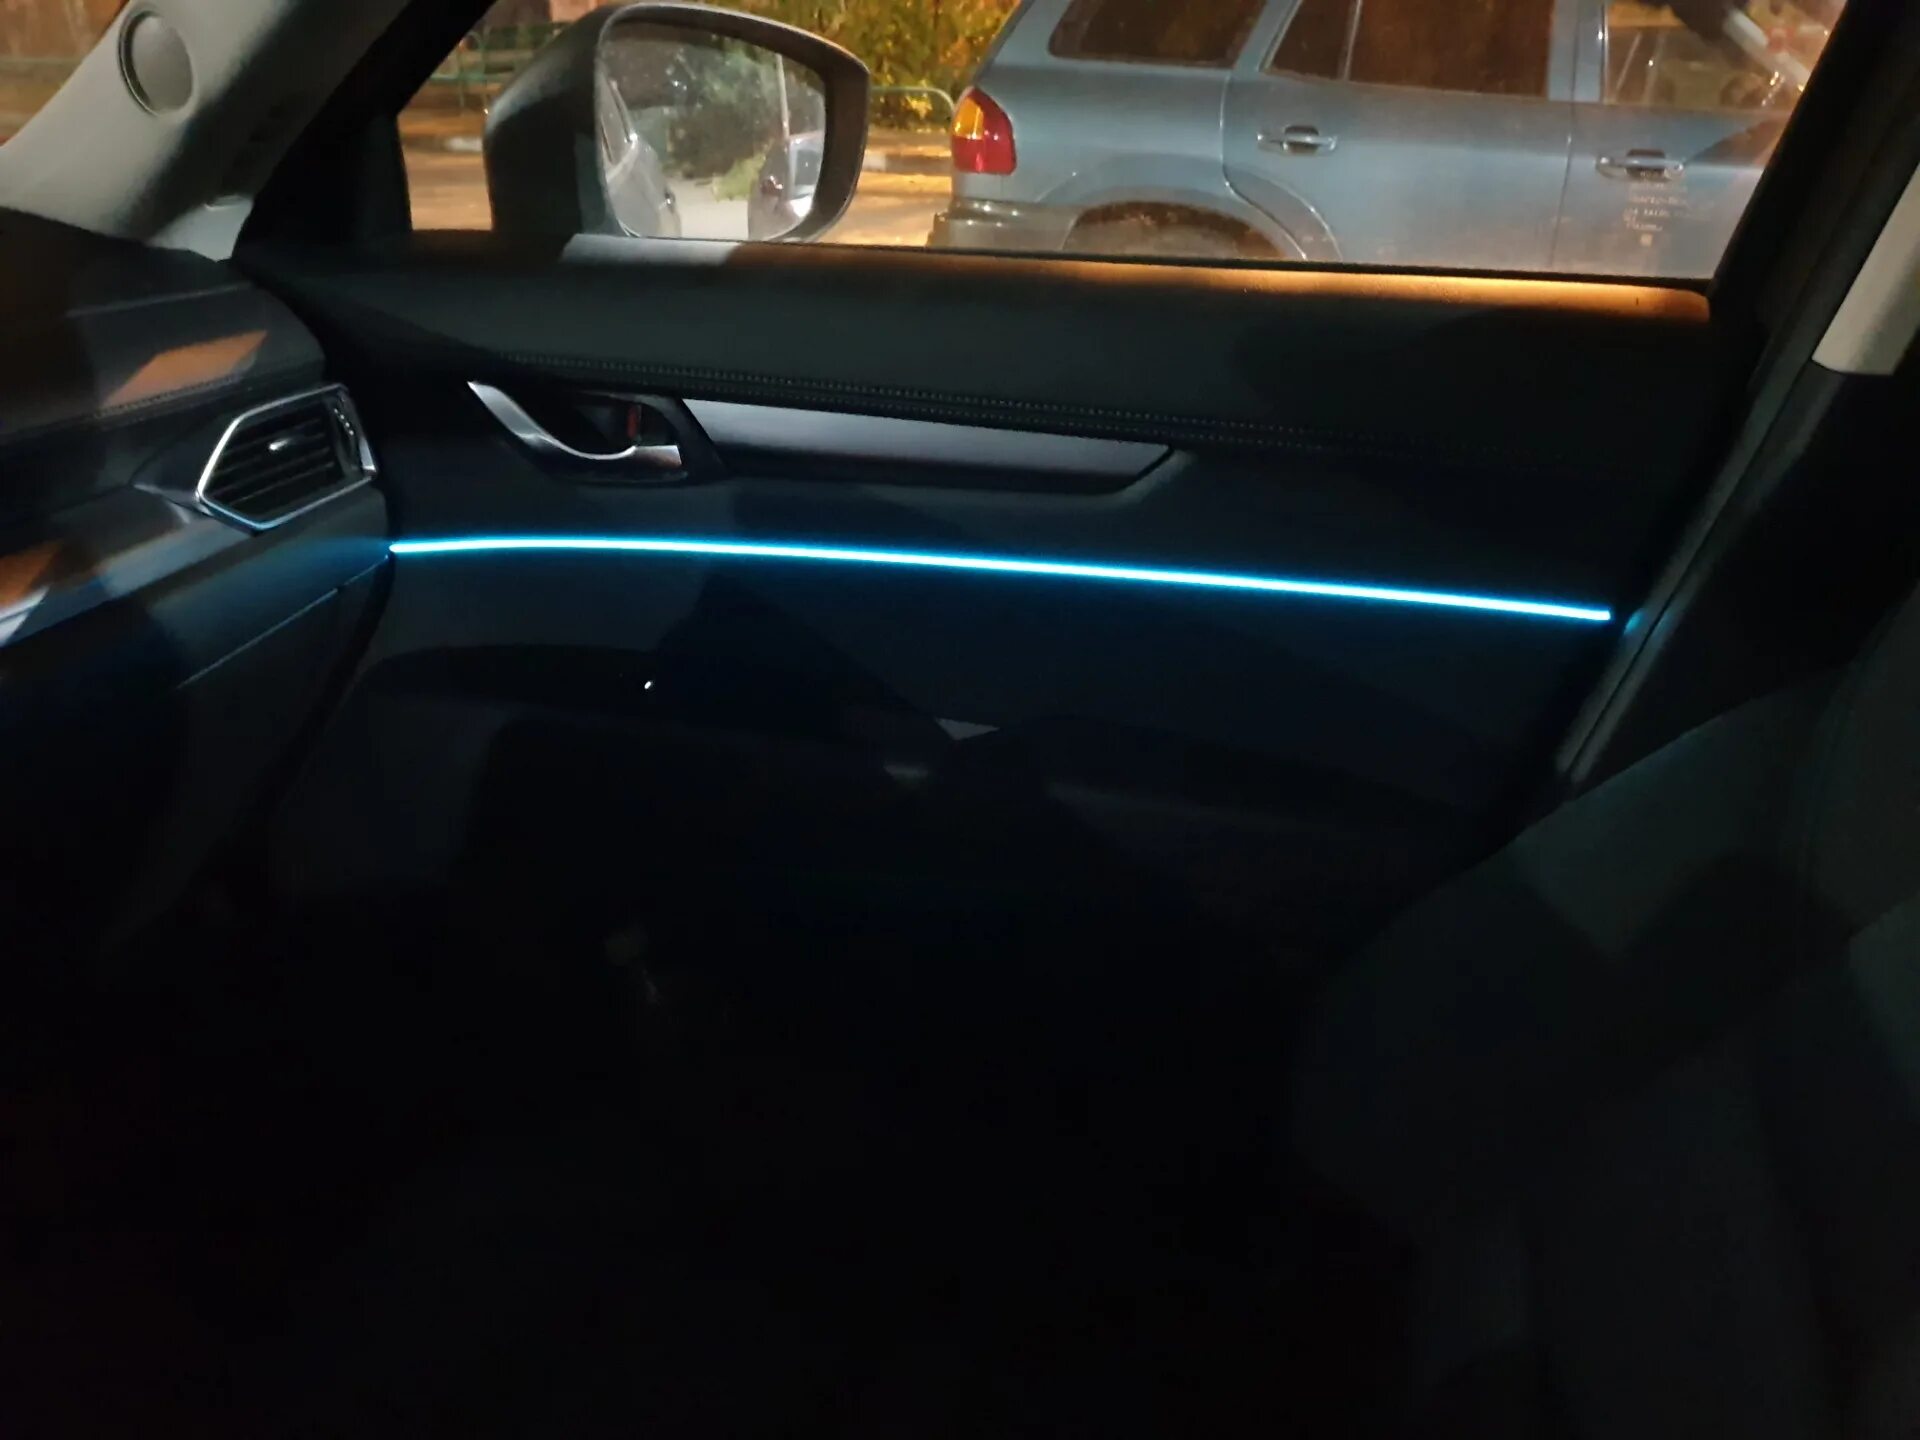 Подсветка мазда сх5. Подсветка салона Mazda CX-5. Подсветка Mazda CX 5. Подсветка салона Мазда cx5. Led подсветка салона Мазда CX-5.